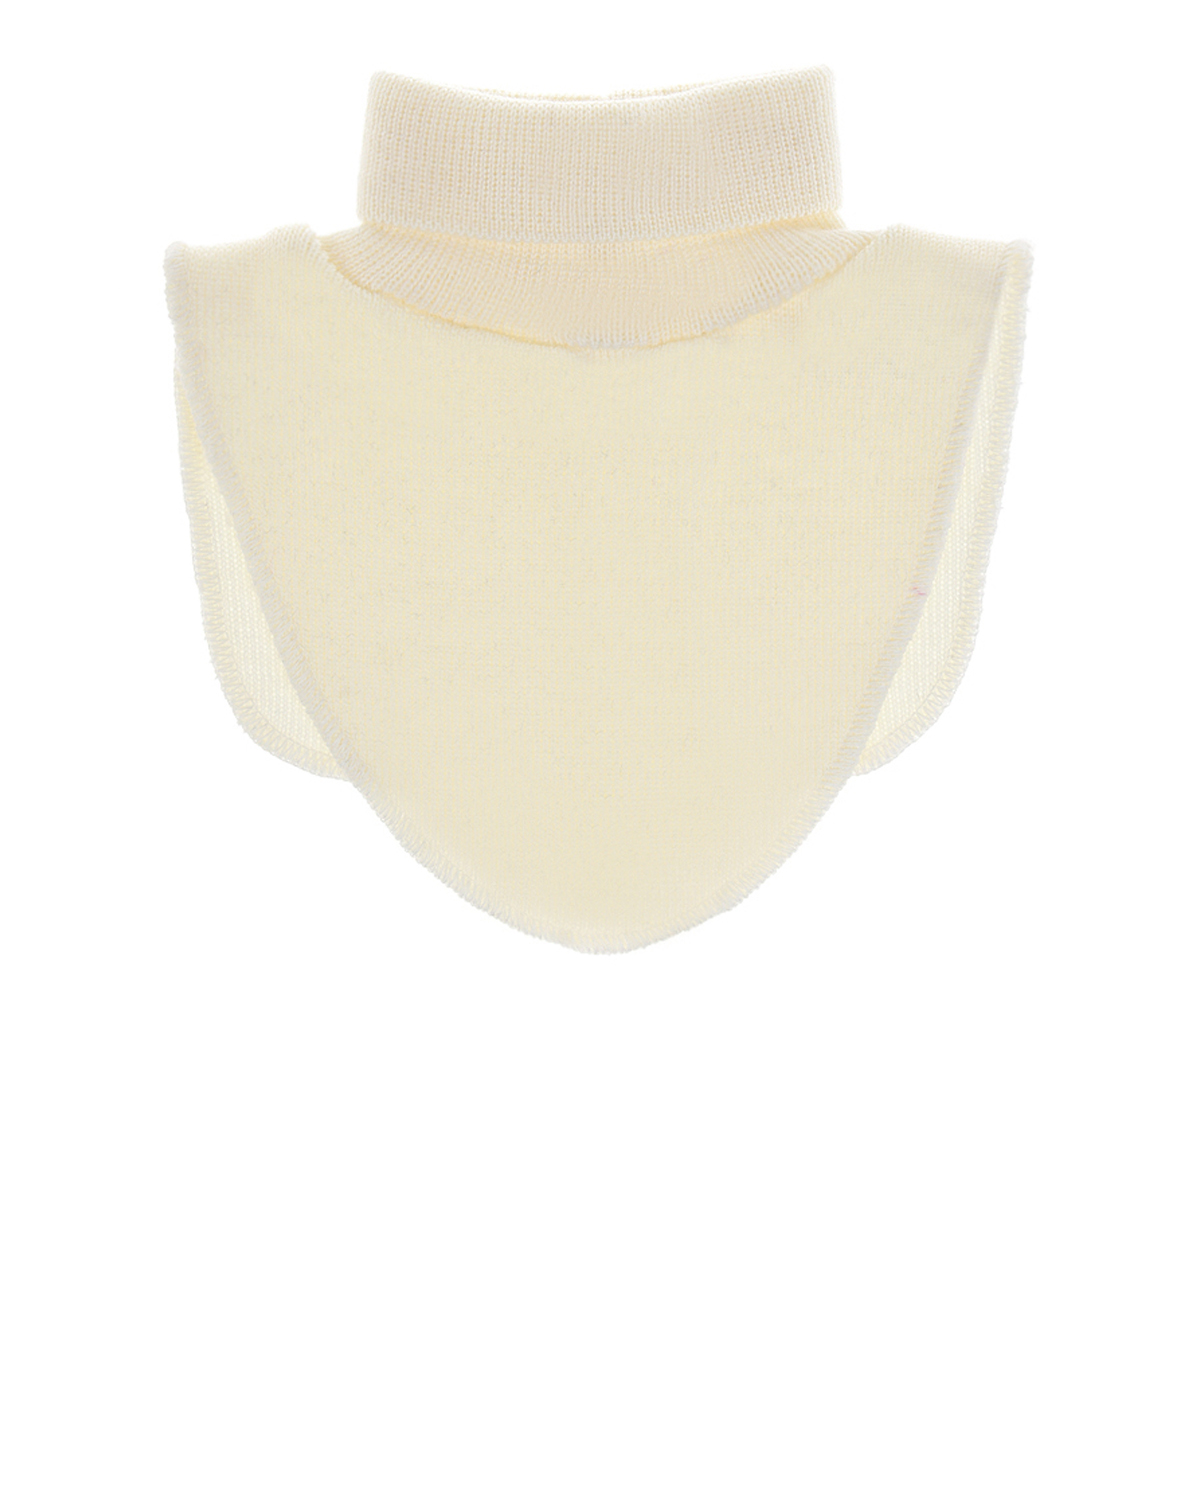 Шерстяной шарф-горло кремового цвета MaxiMo детский, размер 1